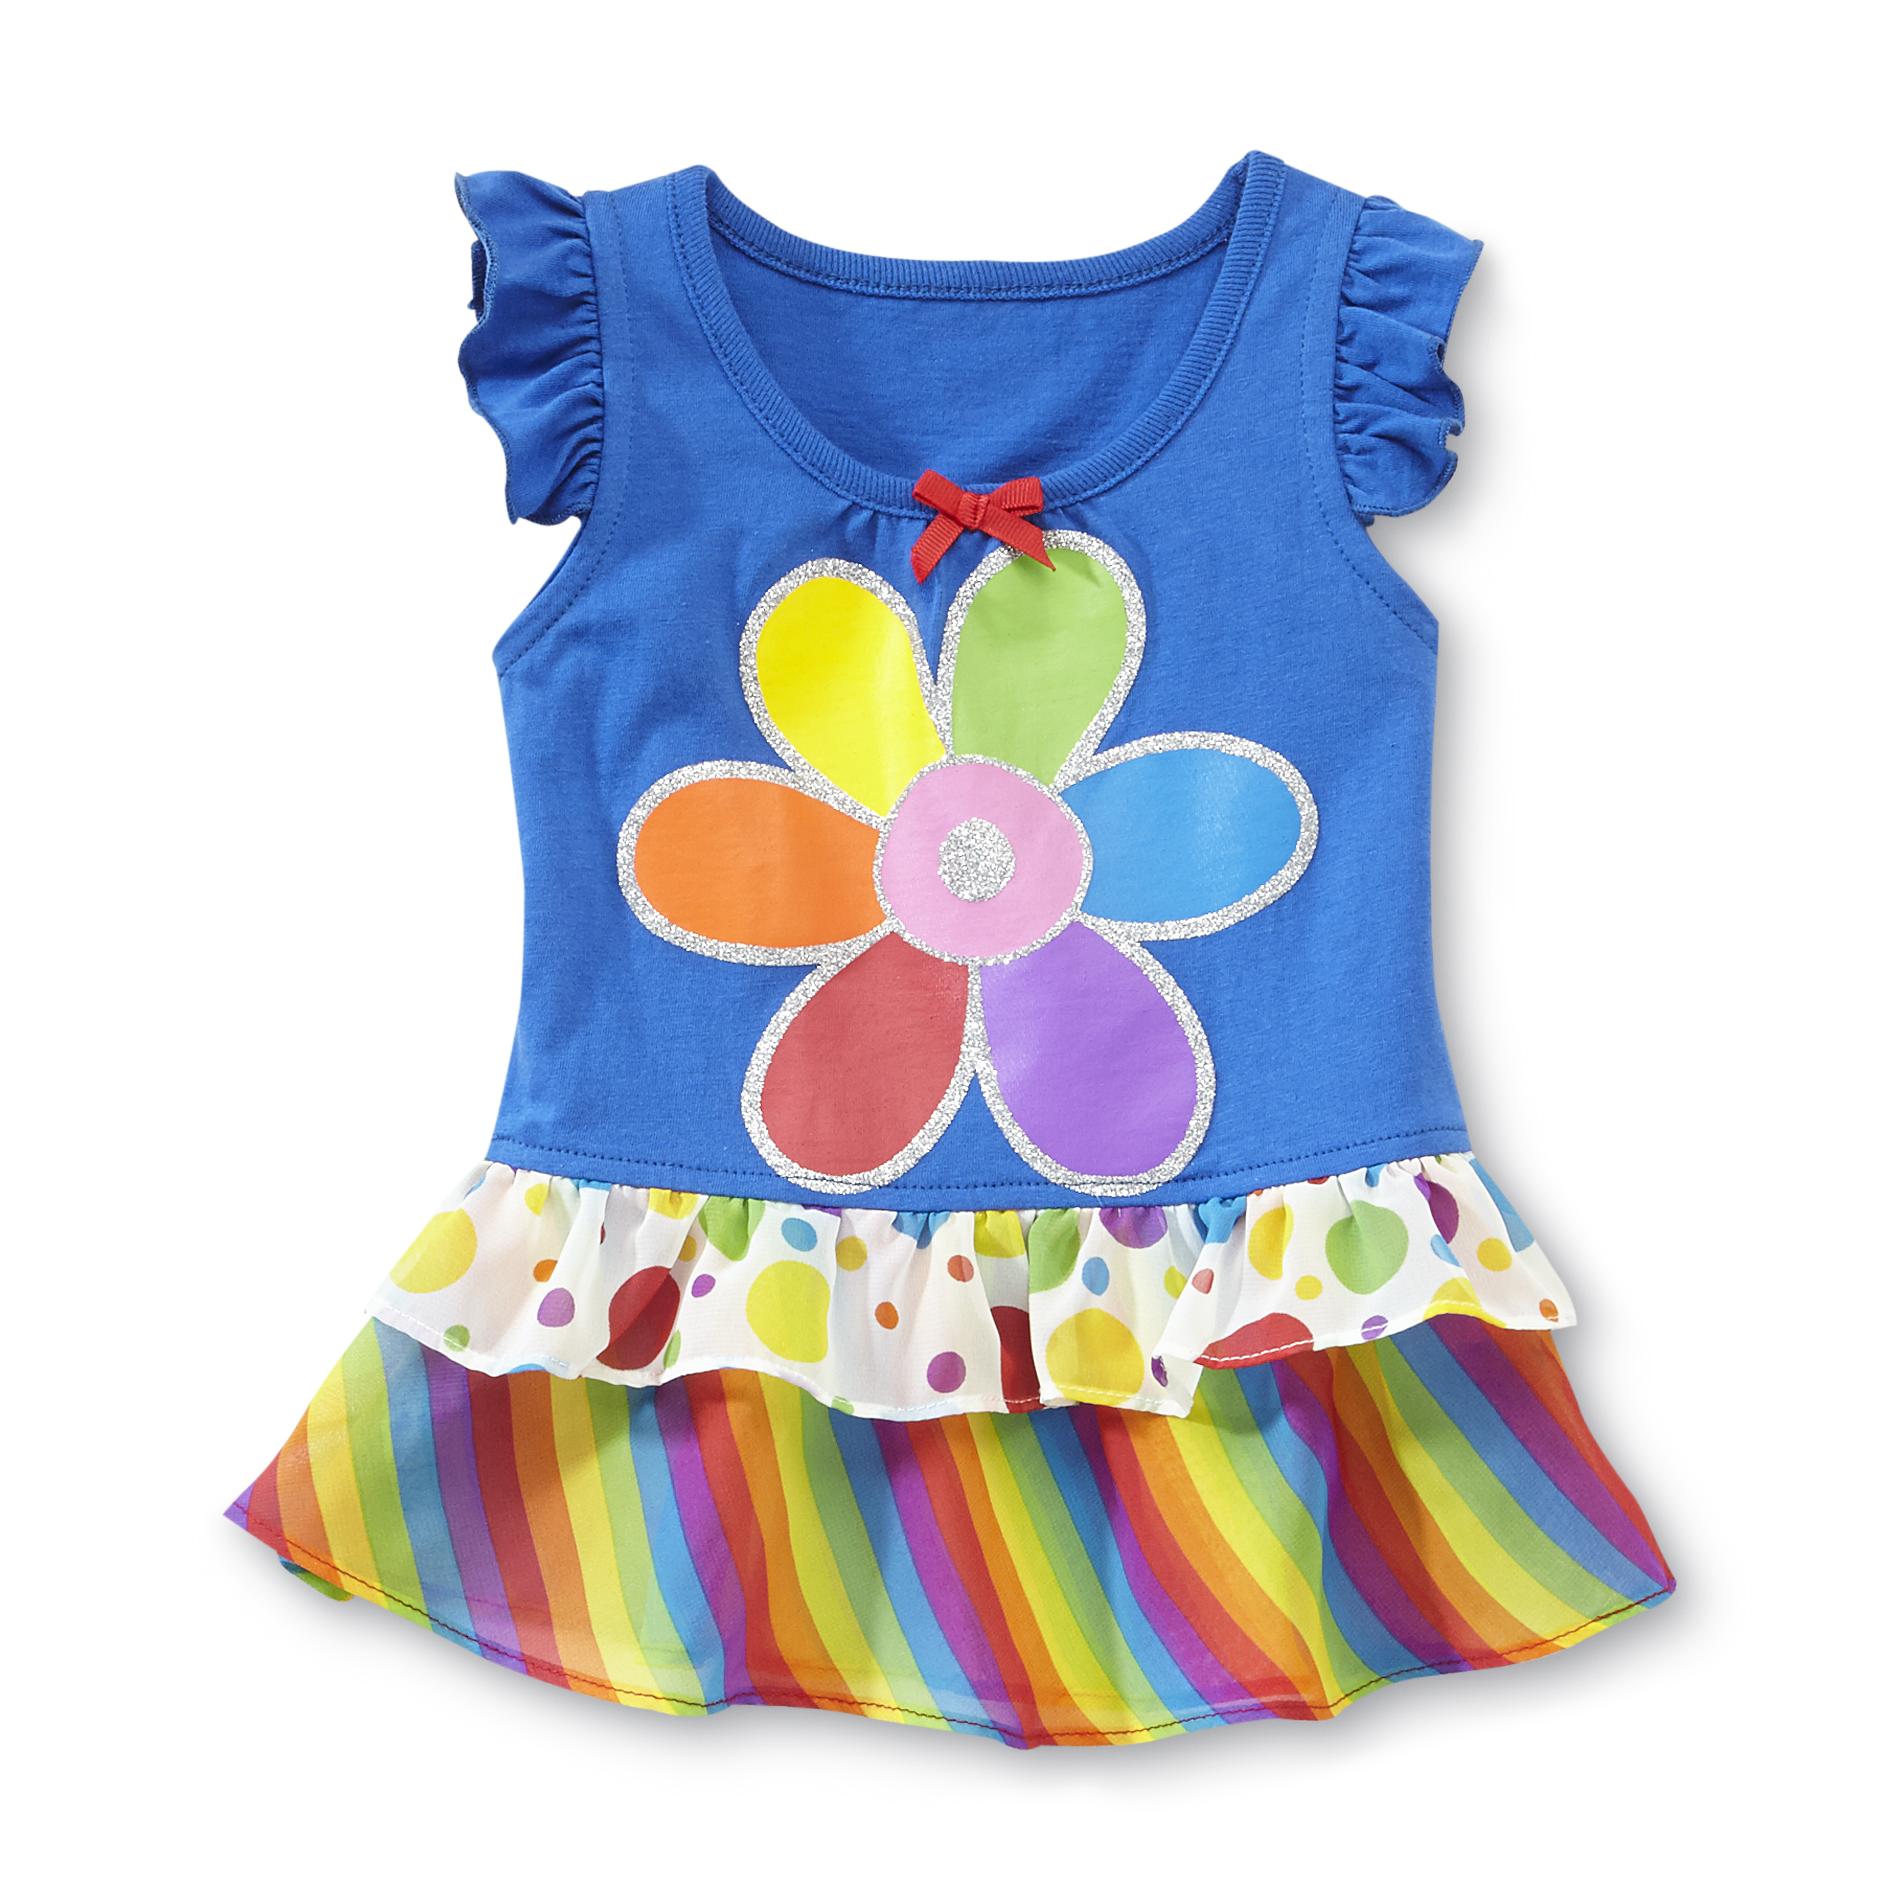 Piper Infant & Toddler Girl's Sleeveless Skirted Top - Rainbow Flower